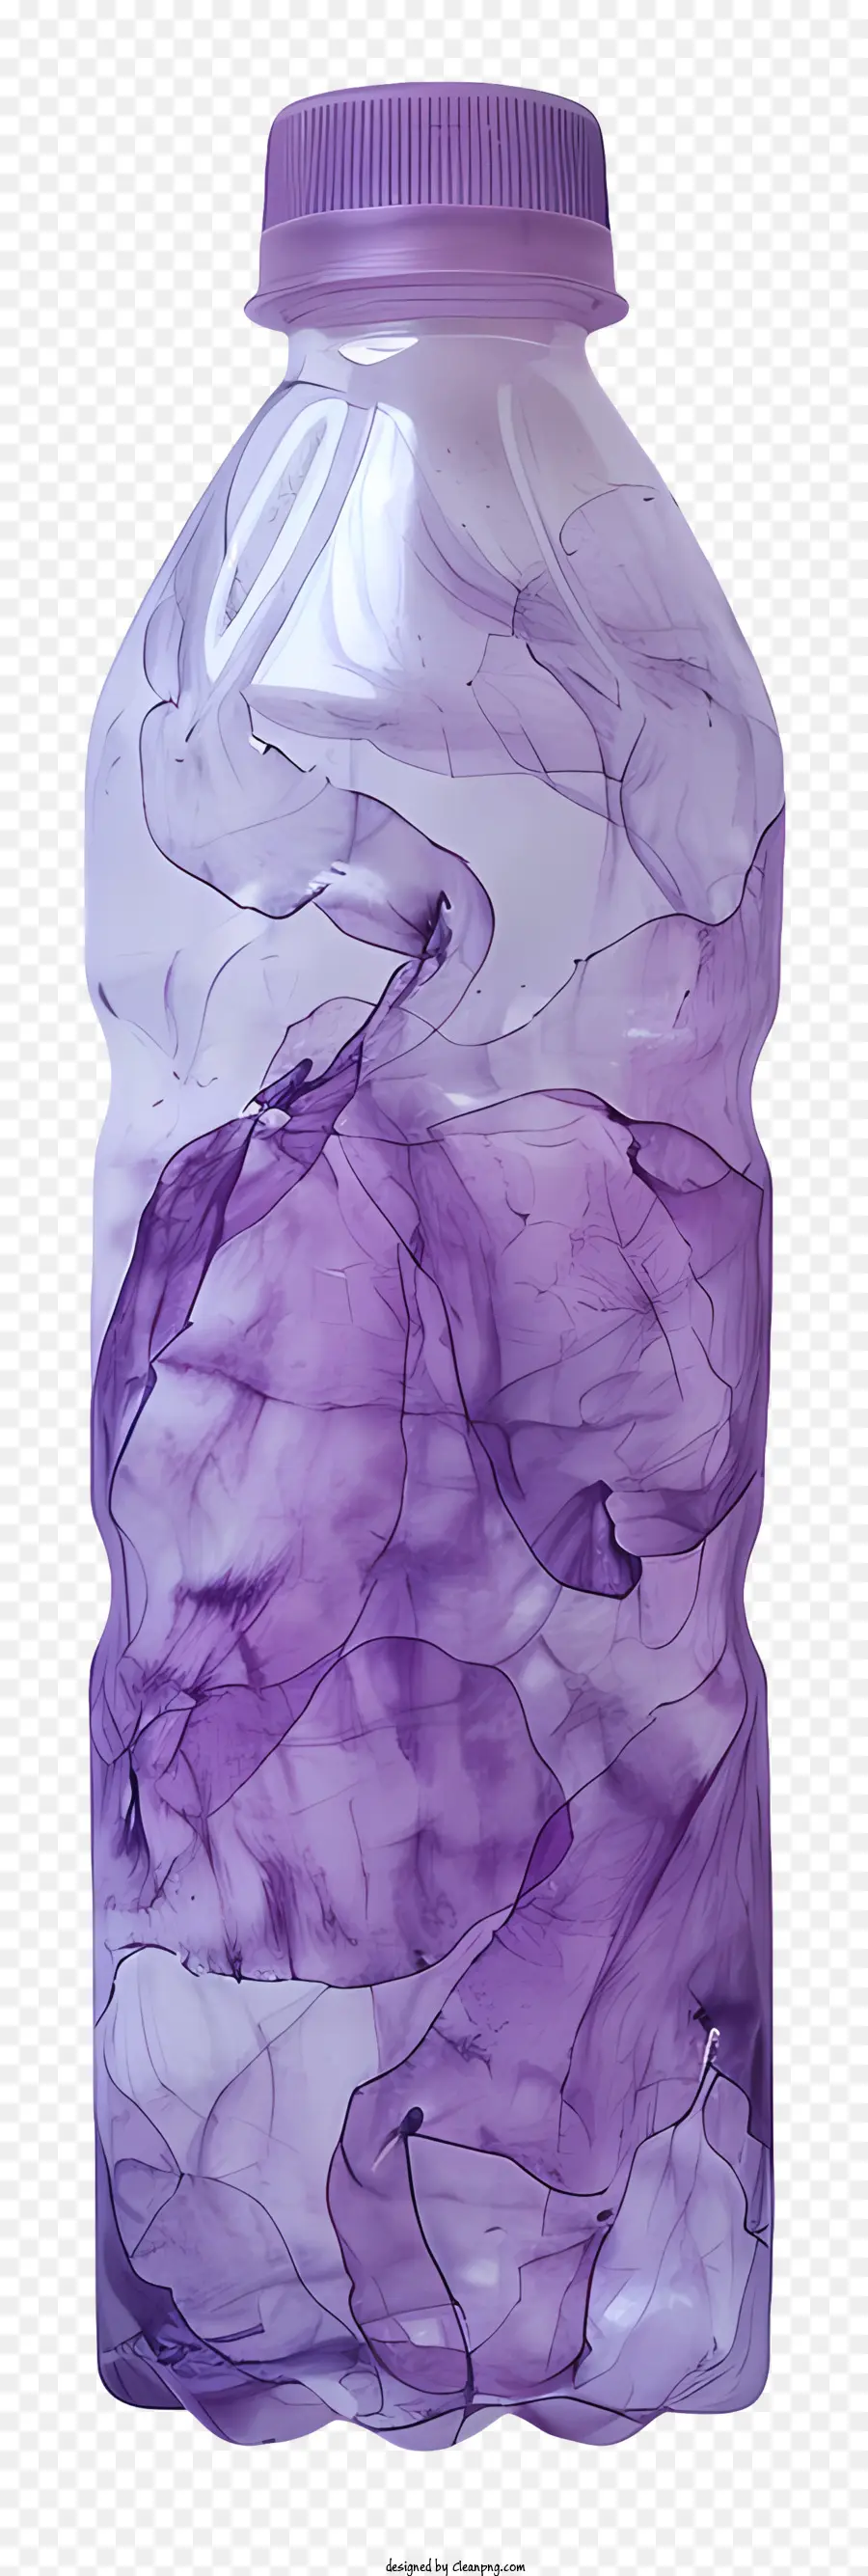 chai nhựa - Chất lỏng màu tím trong chai hình ống trong suốt